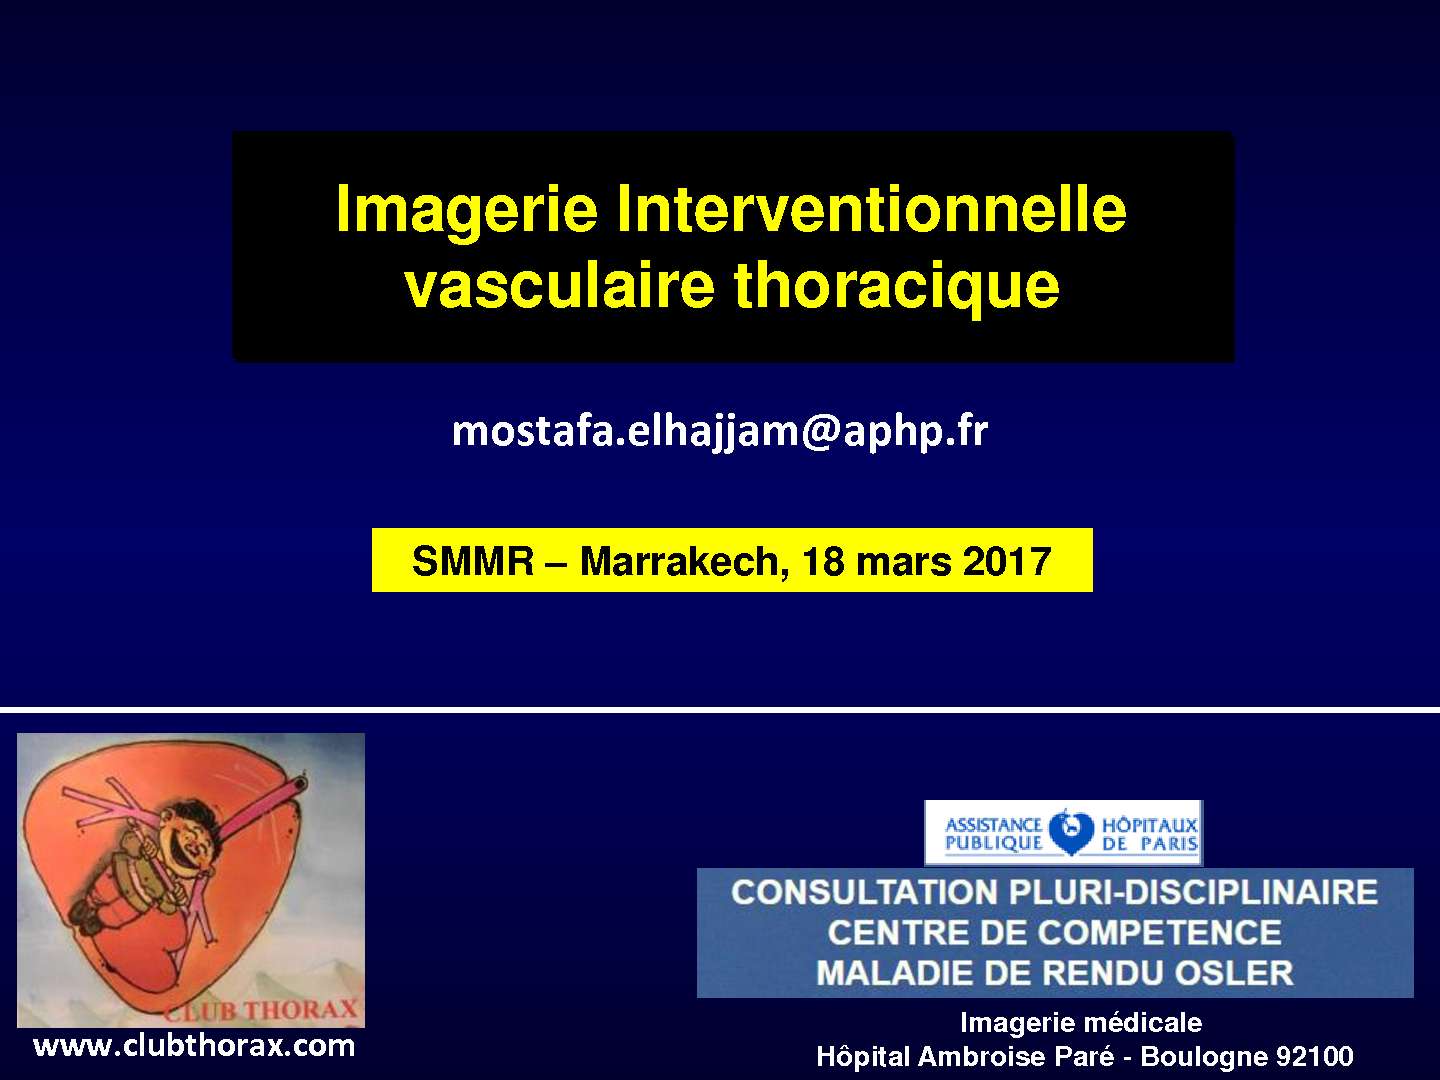 Radiologie interventionnelle dans la pathologie Vasculaire. M. El HAJJAM (Paris)